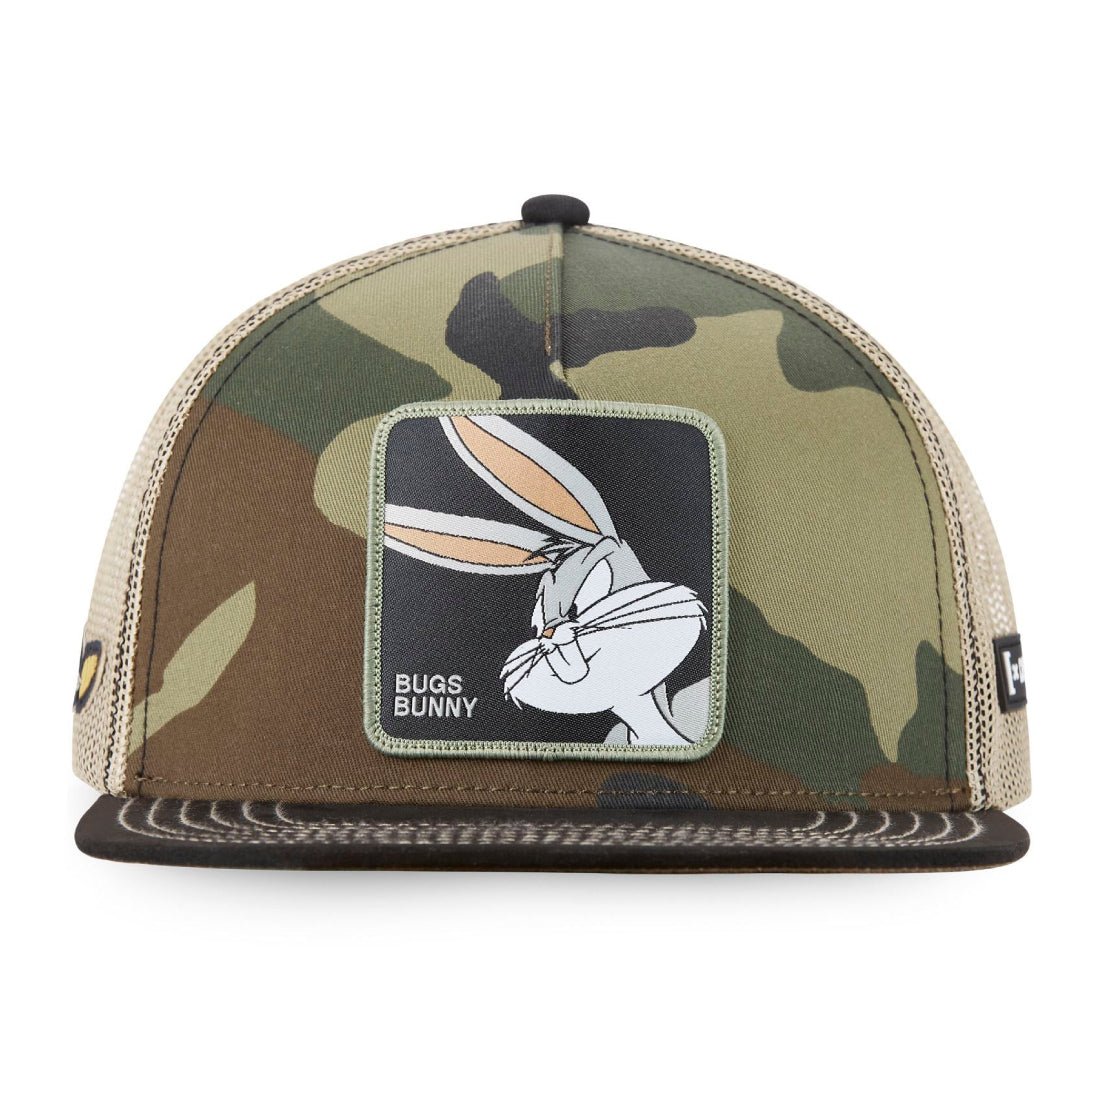 Queue Caps Bugs Bunny Cap - Camo - قبعة - Store 974 | ستور ٩٧٤